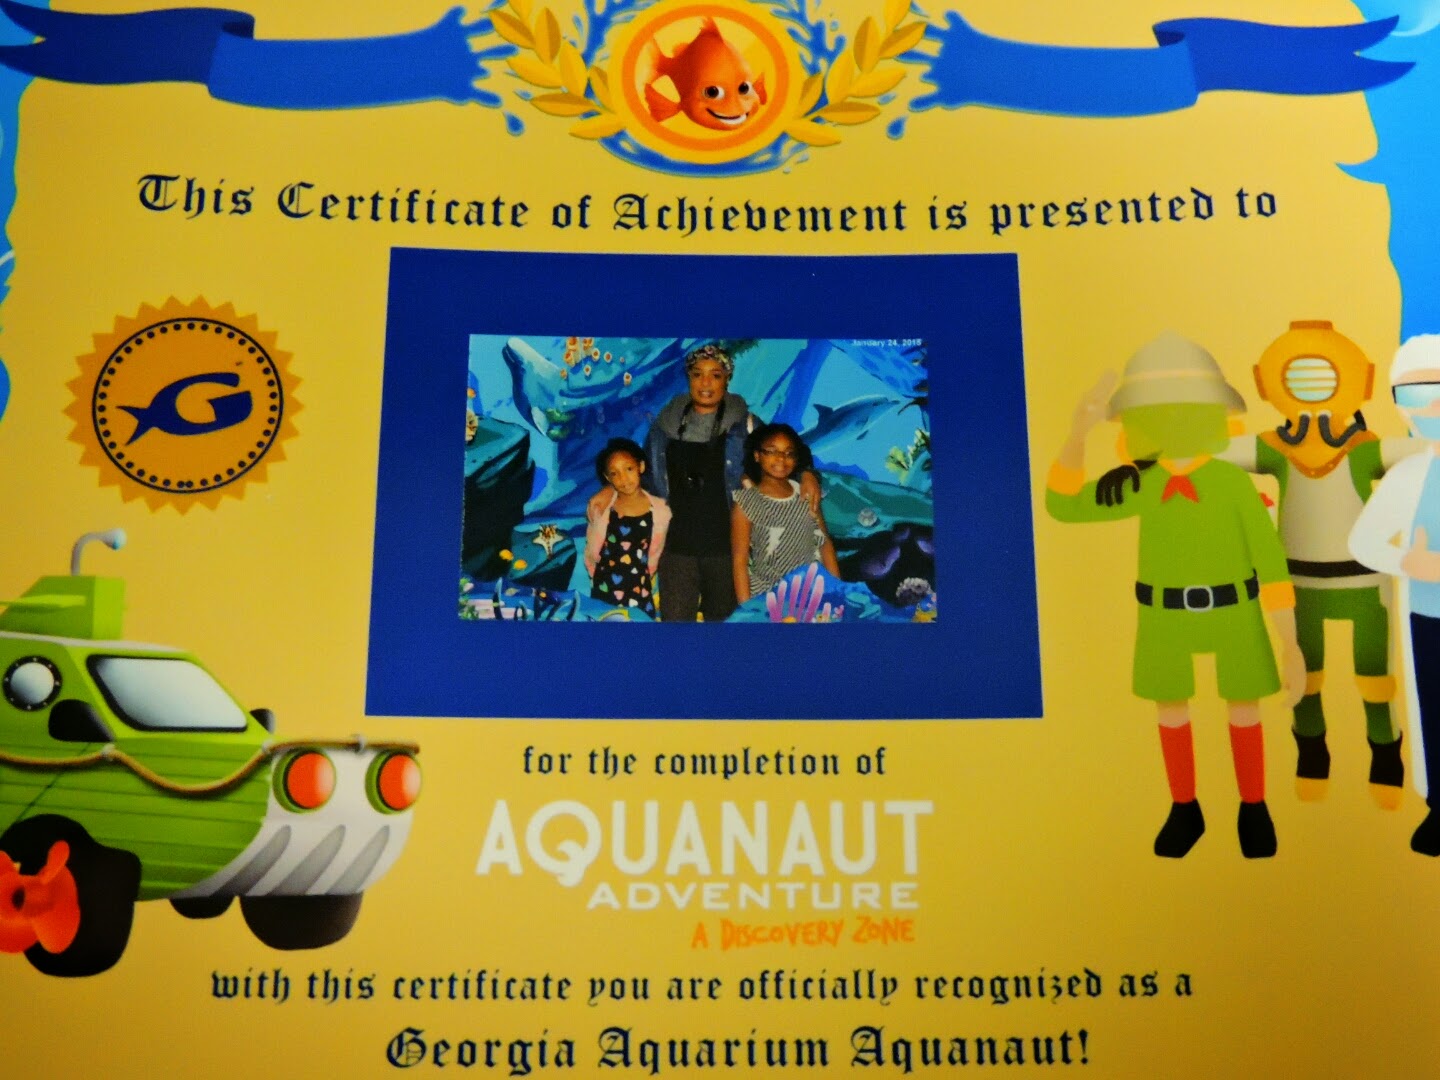 Georgia Aquarium Aquanaut Adventure: A Discovery Zone Review  #GAAquanautLaunch via www.productreviewmom.com